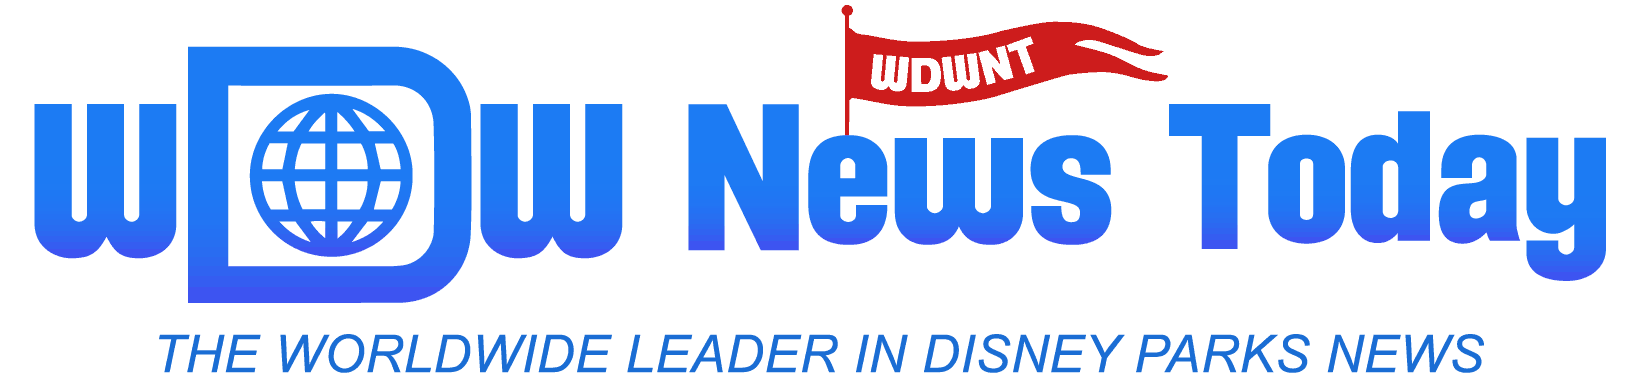 WDW Logo - Home - WDW News Today